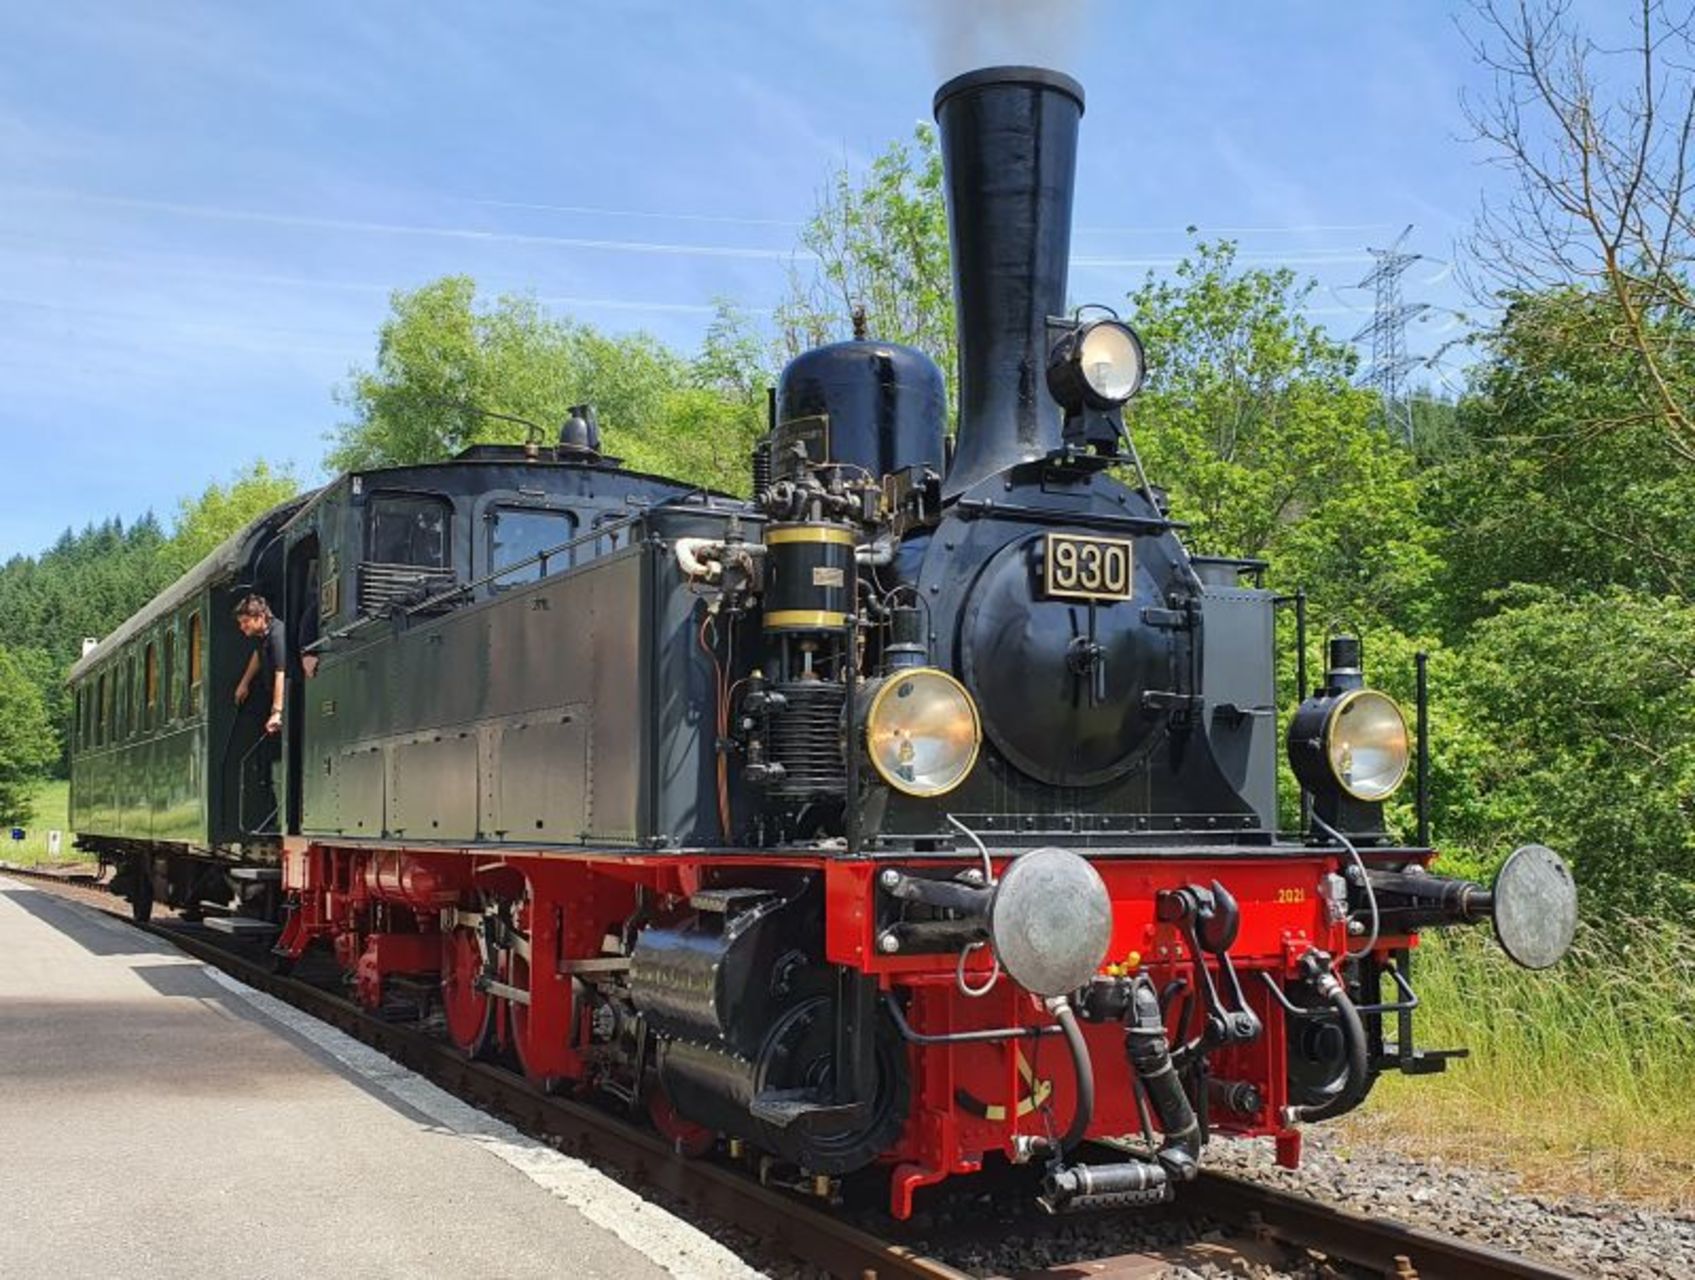 Nostalgiefahrten mit der Dampflok der Schwäbische Alb-Bahn in Münsingen im Biosphärengebiet Schwäbische Alb. Eine historische schwarze Dampflok mit einem grünen Waggon steht auf Gleisen an einem Bahnhof. Aus der Fahrerkabine lehnt eine Person. Es ist sonnig.